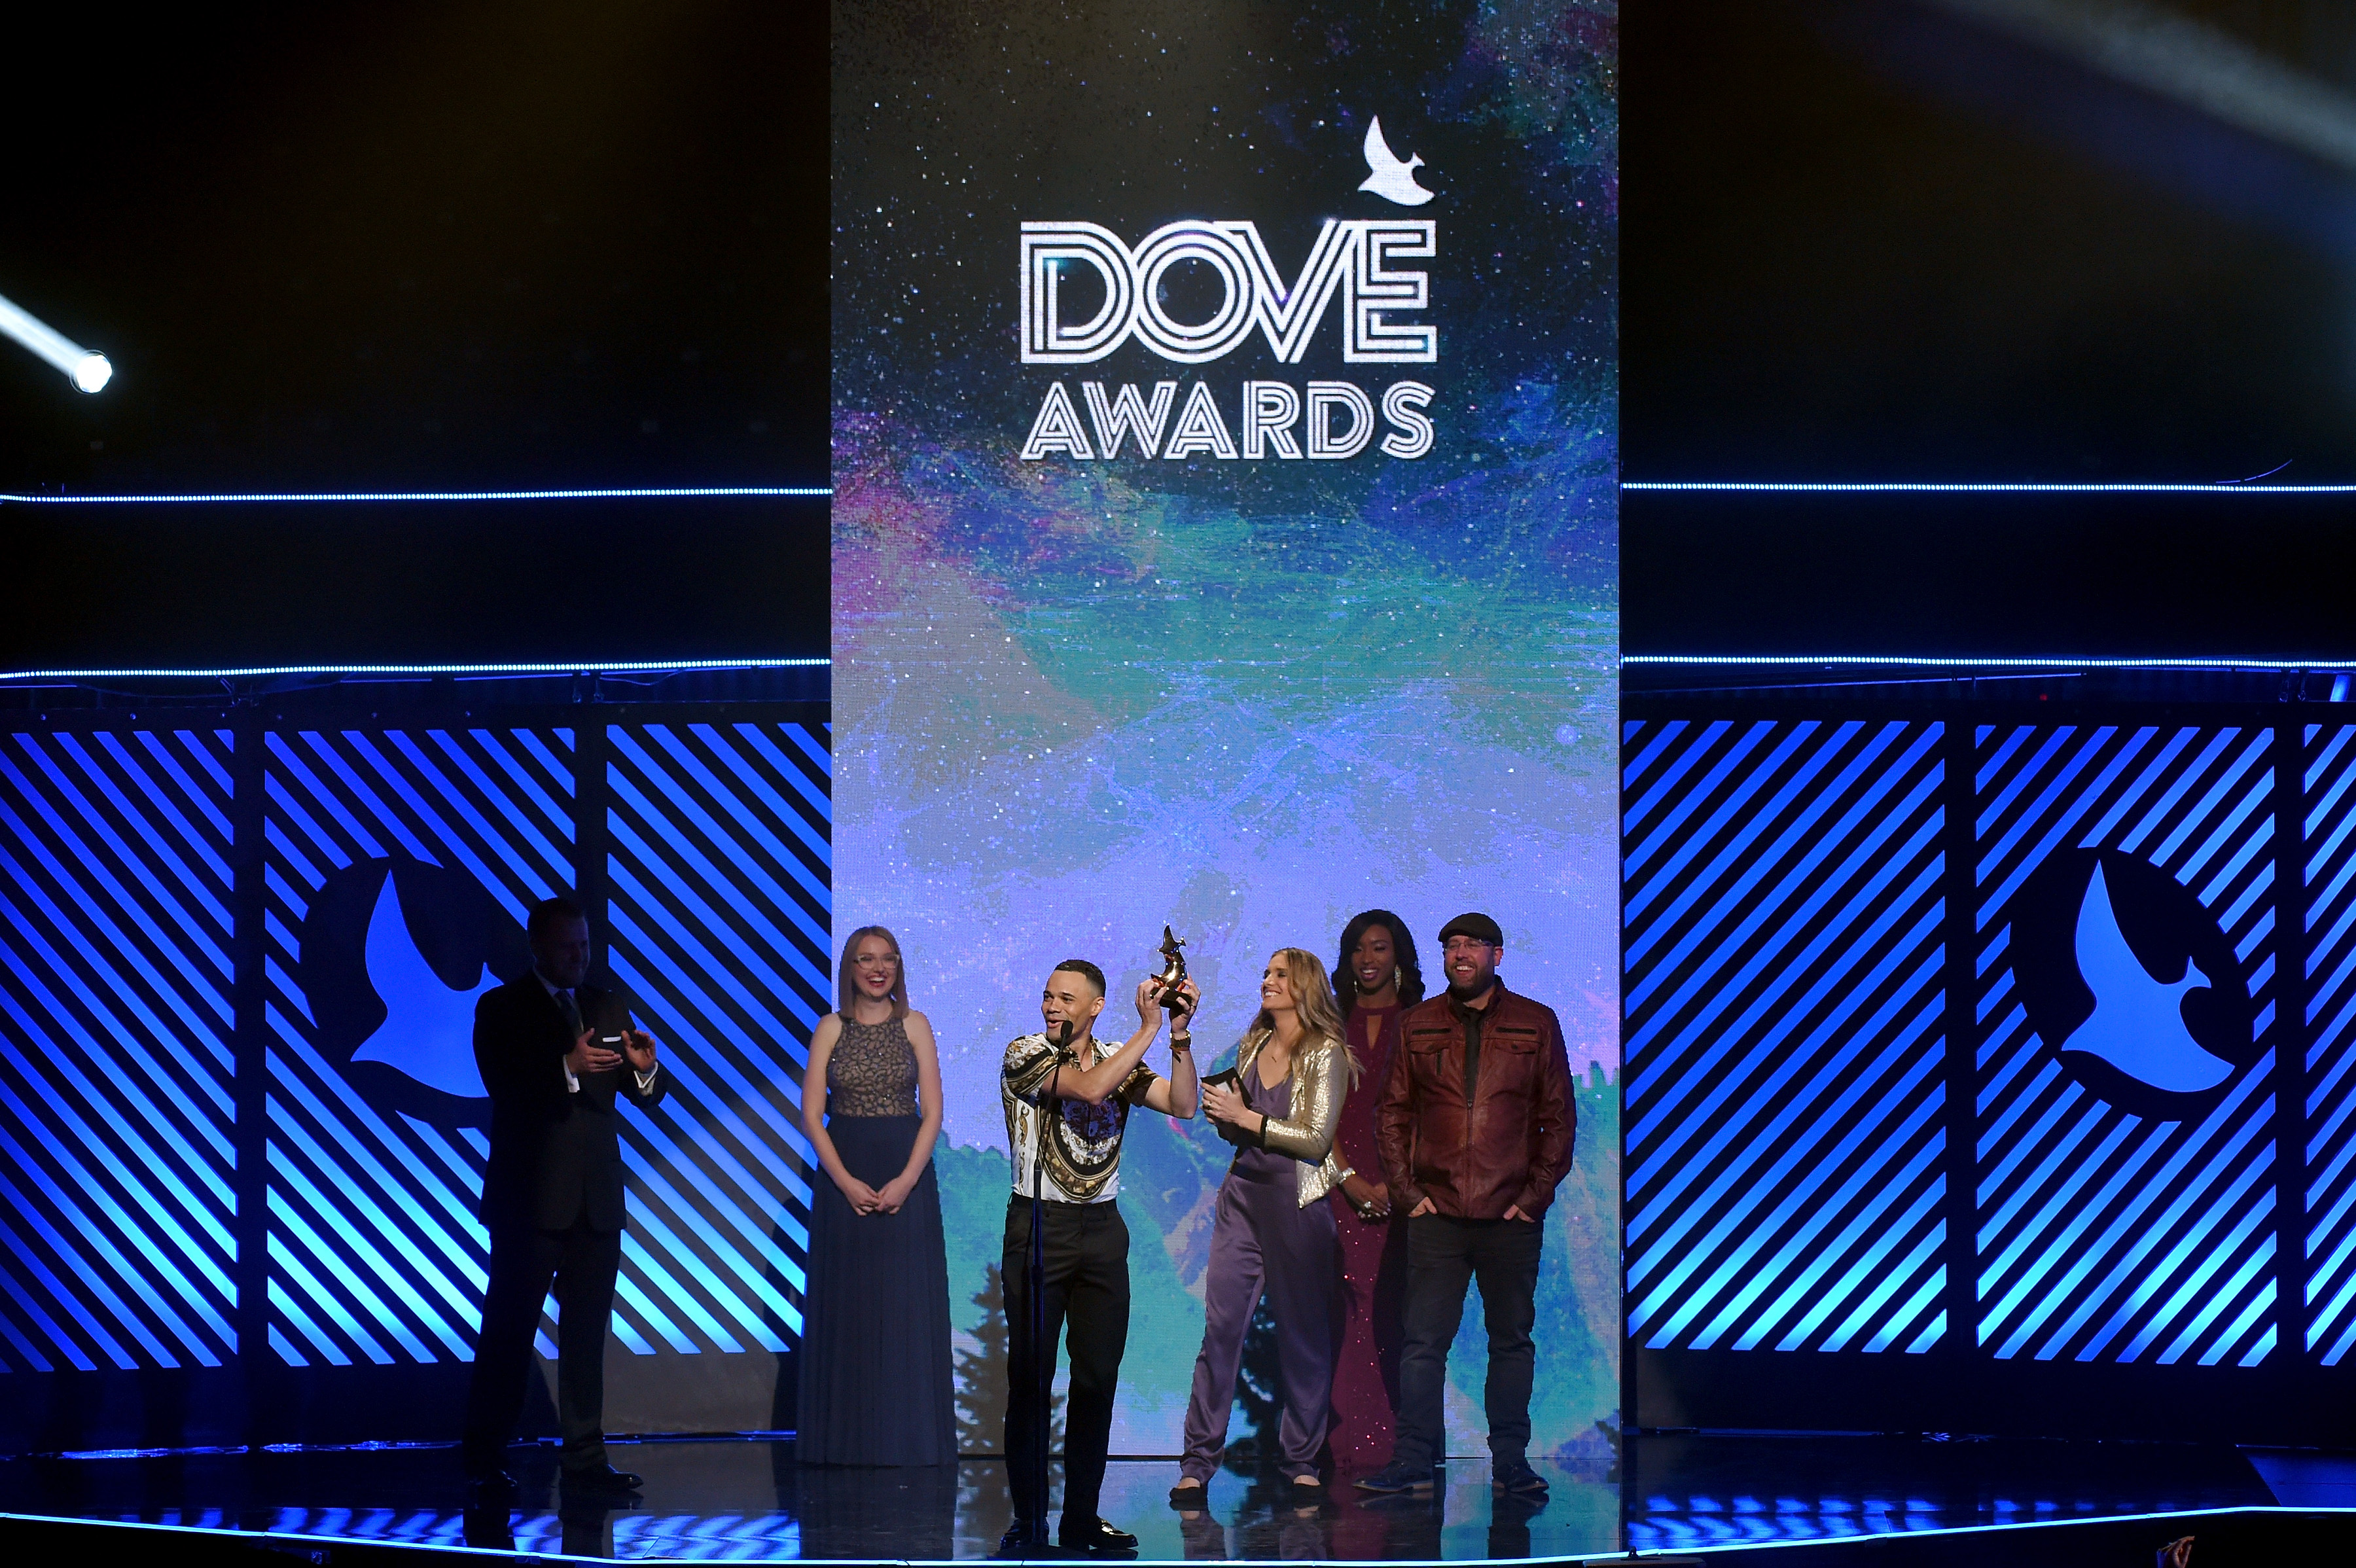 49th Annual GMA Dove Awards - Inside